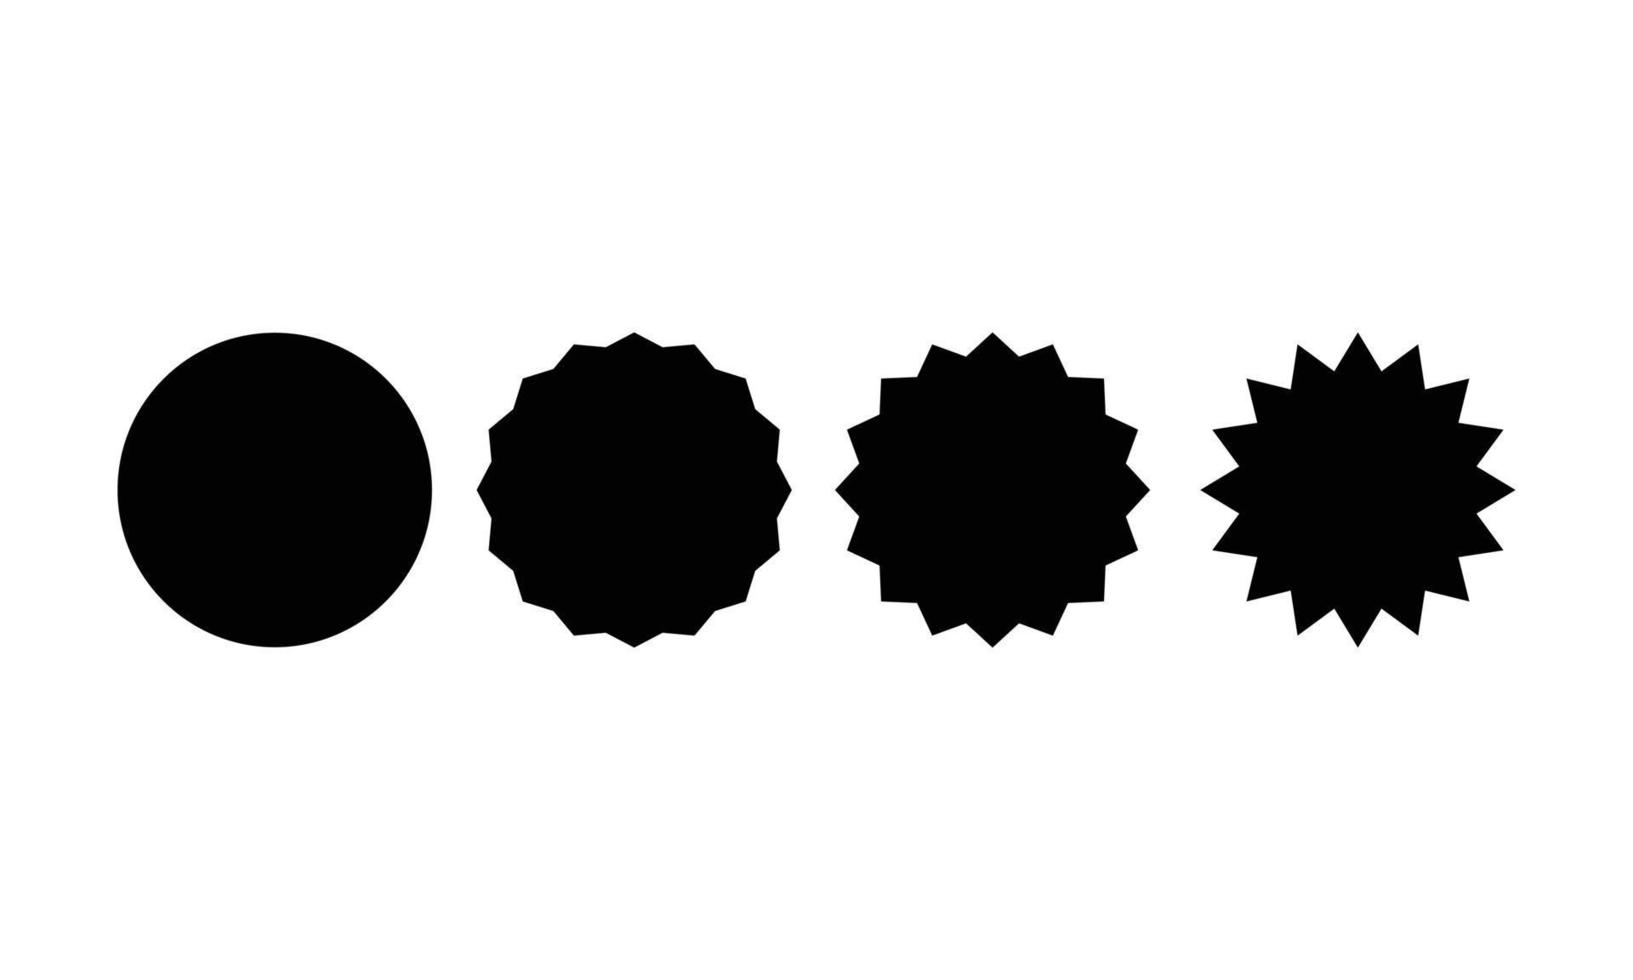 forma redonda e estrela básica definida para venda de adesivo na cor preta, isolado no fundo branco. design de vetor de elemento para rótulo, tag, promoção, modelo, campanha, etc.